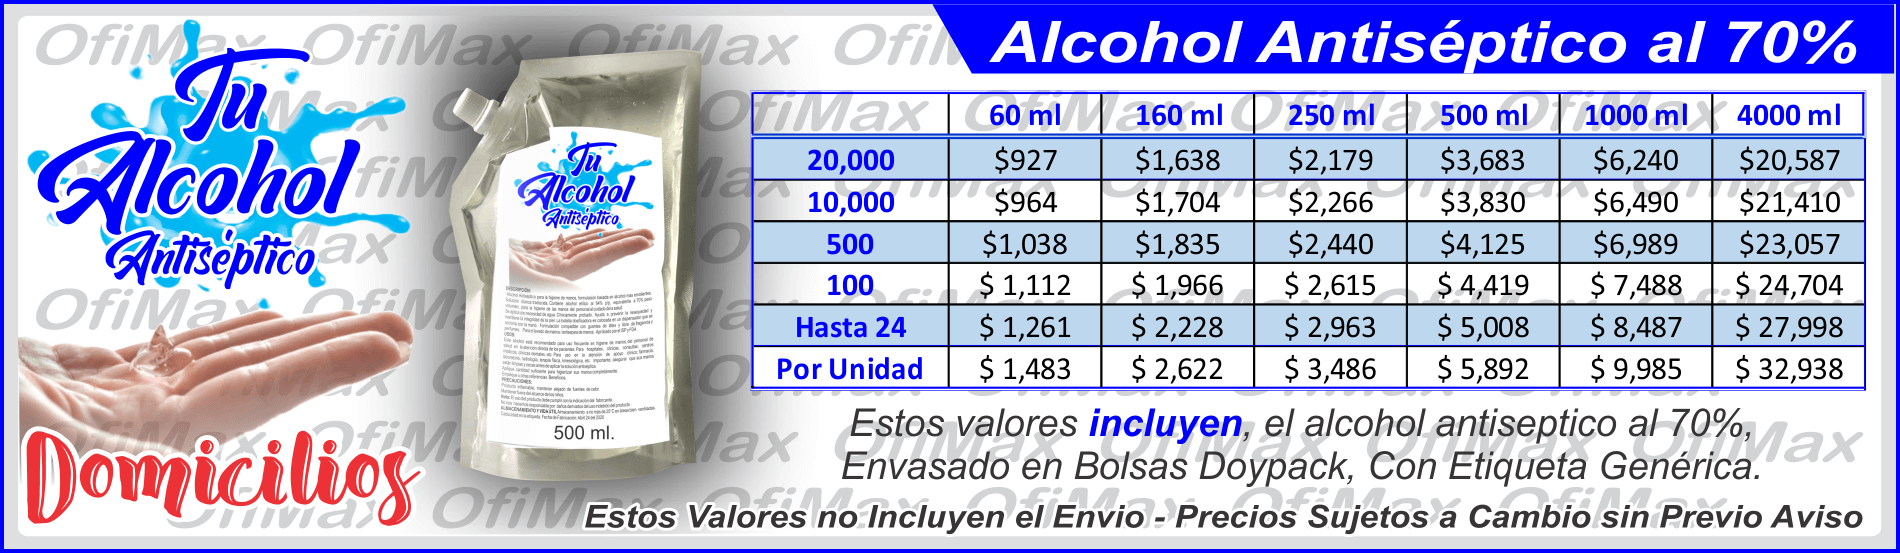 alcohol antiseptico al por mayor y al detal, bogota, colombia